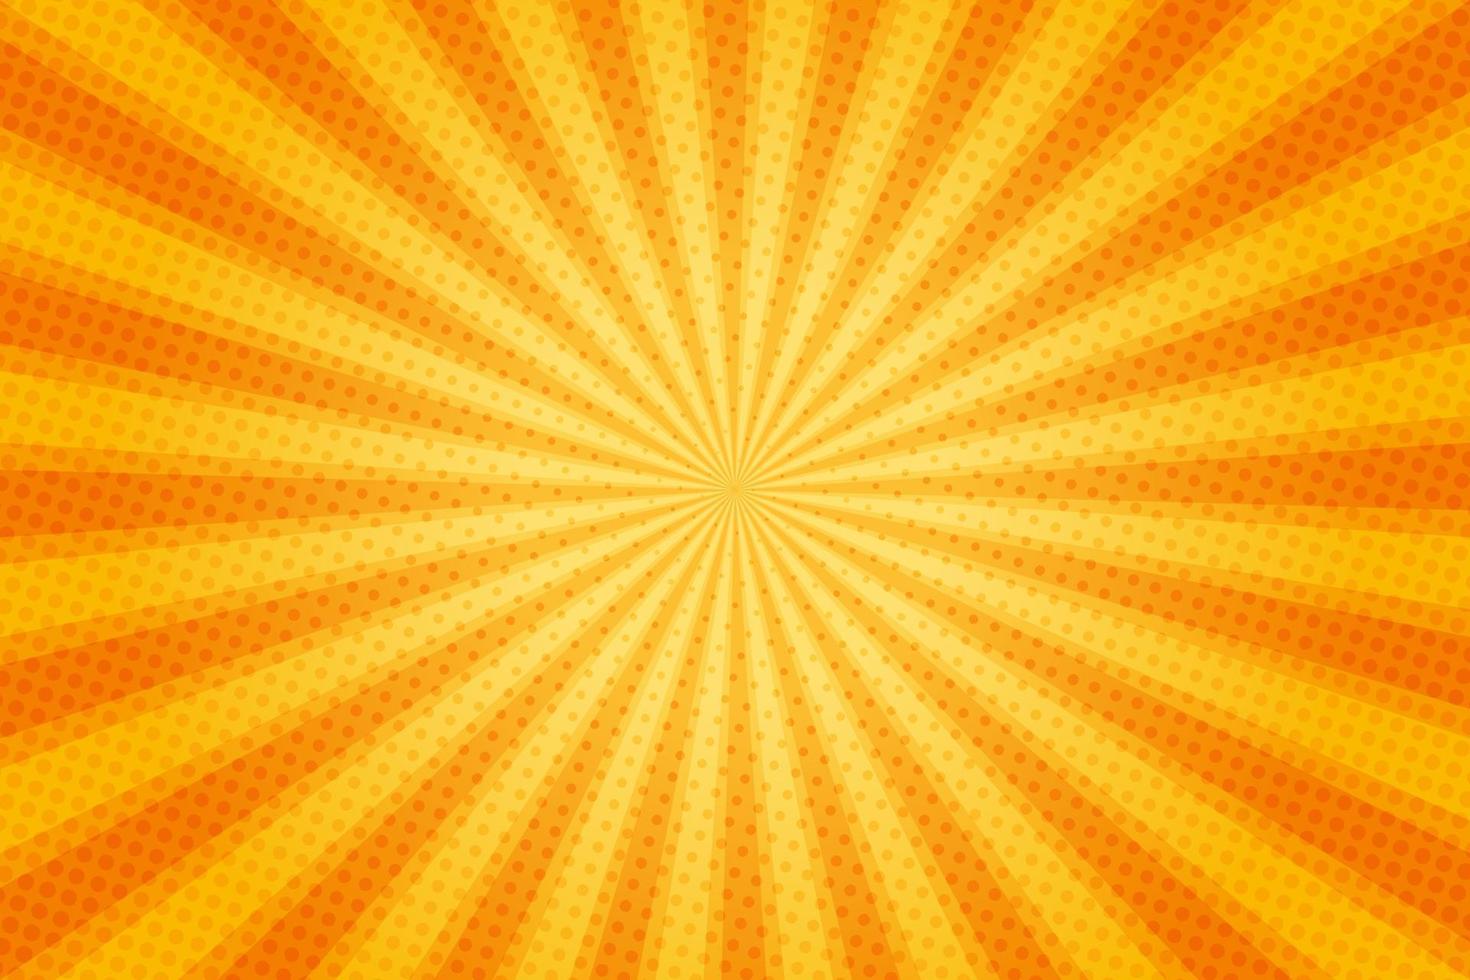 rayons de soleil style vintage rétro sur fond jaune et orange, motif comique avec starburst et demi-teintes. effet sunburst rétro de dessin animé avec des points. des rayons. illustration vectorielle de bannière d'été. vecteur